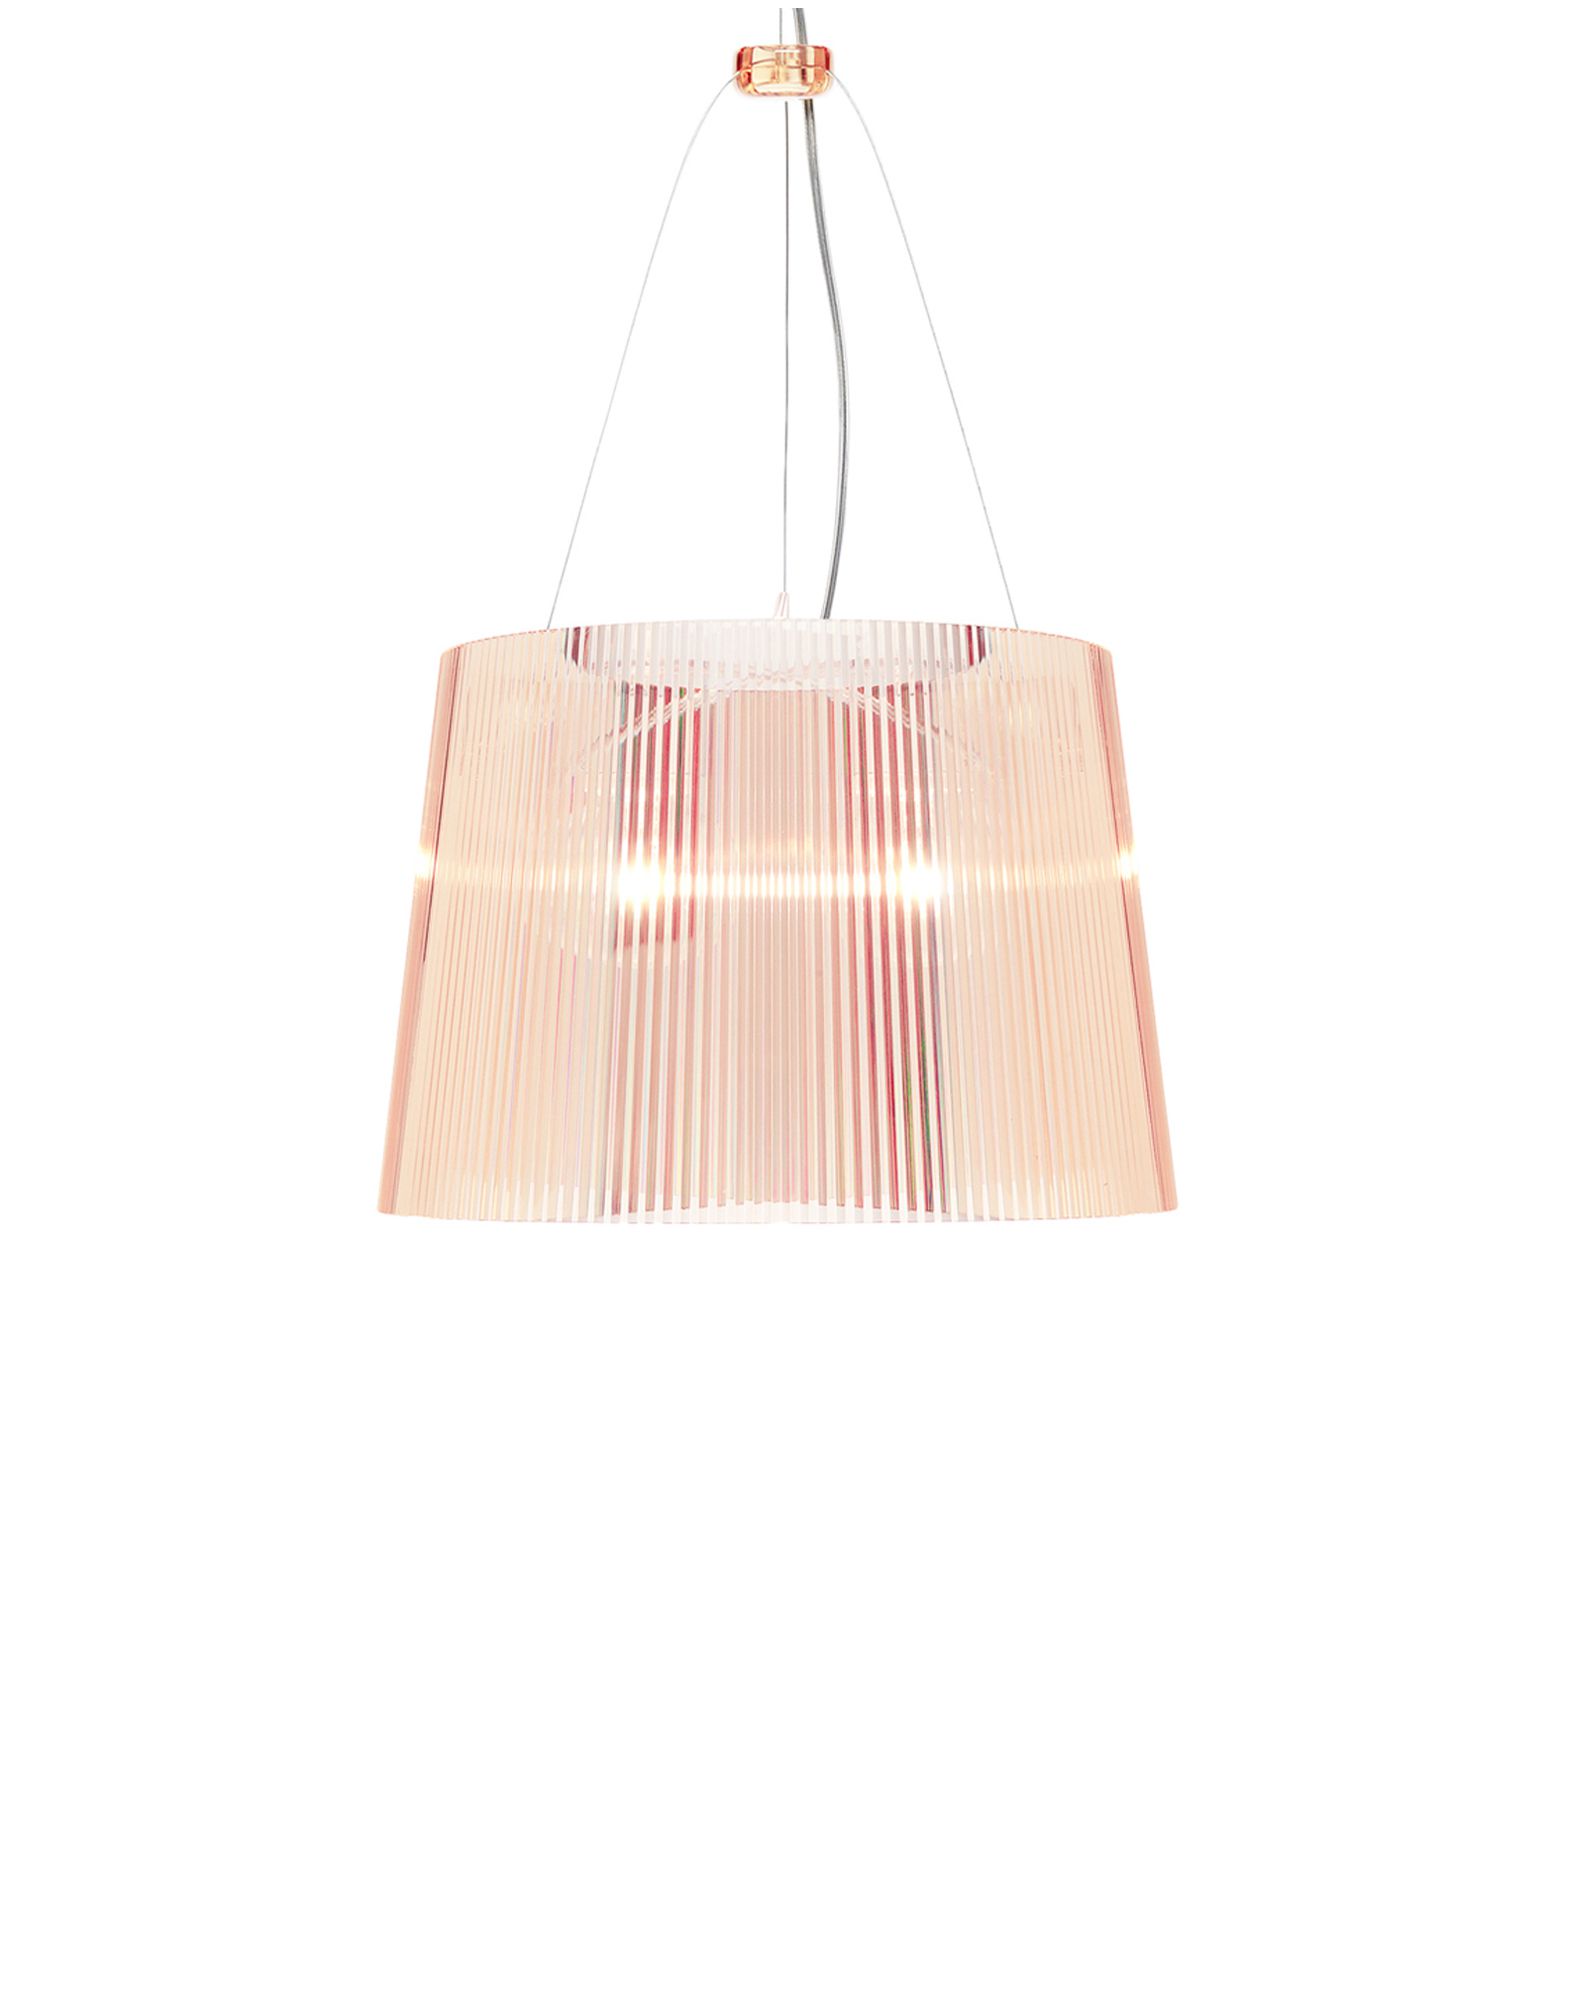 Suspensie Kartell Ge’ design Ferruccio Laviani E27 max 70W h37cm roz transparent